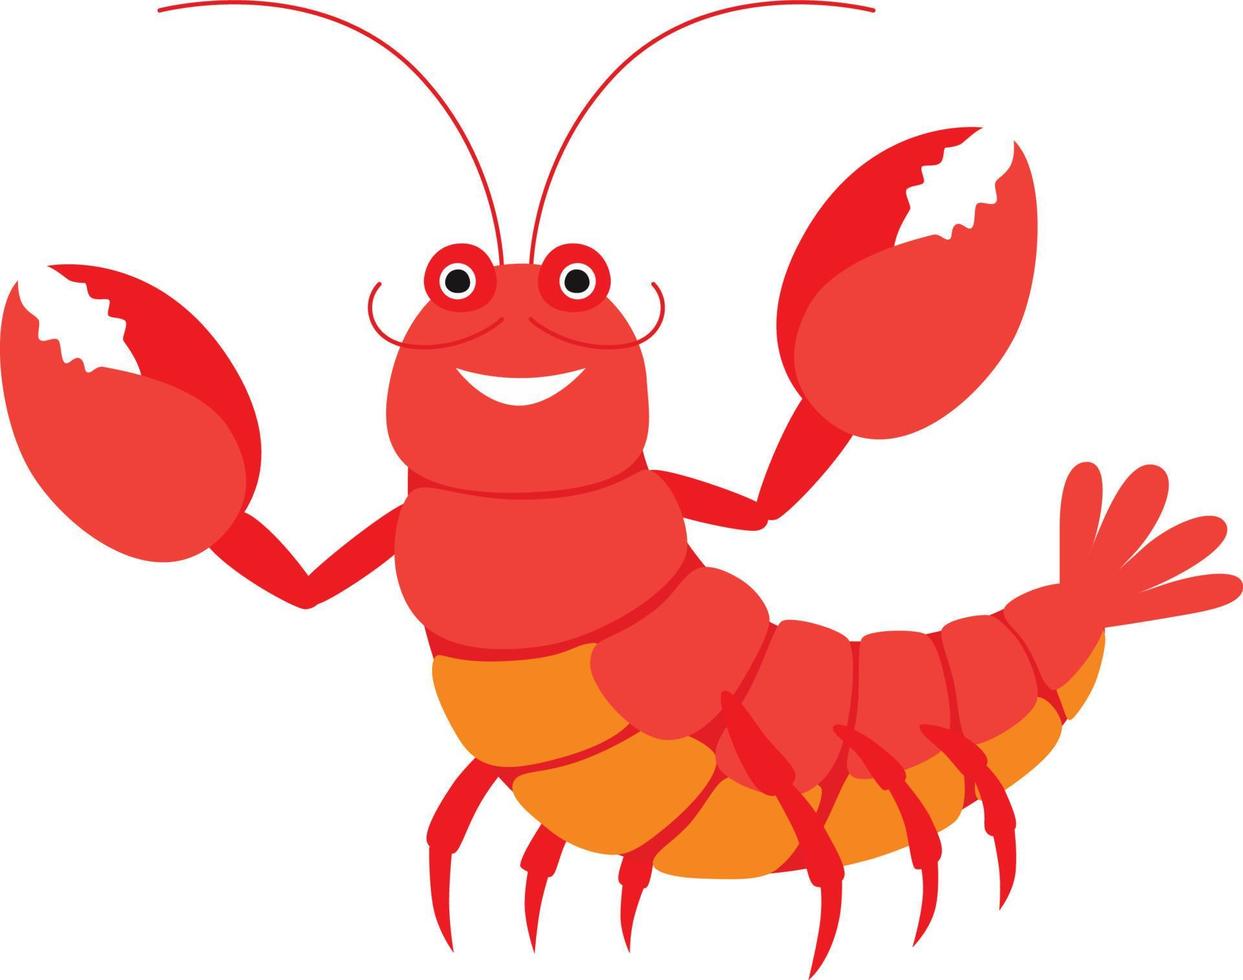 Cartoon lobster illustration vector